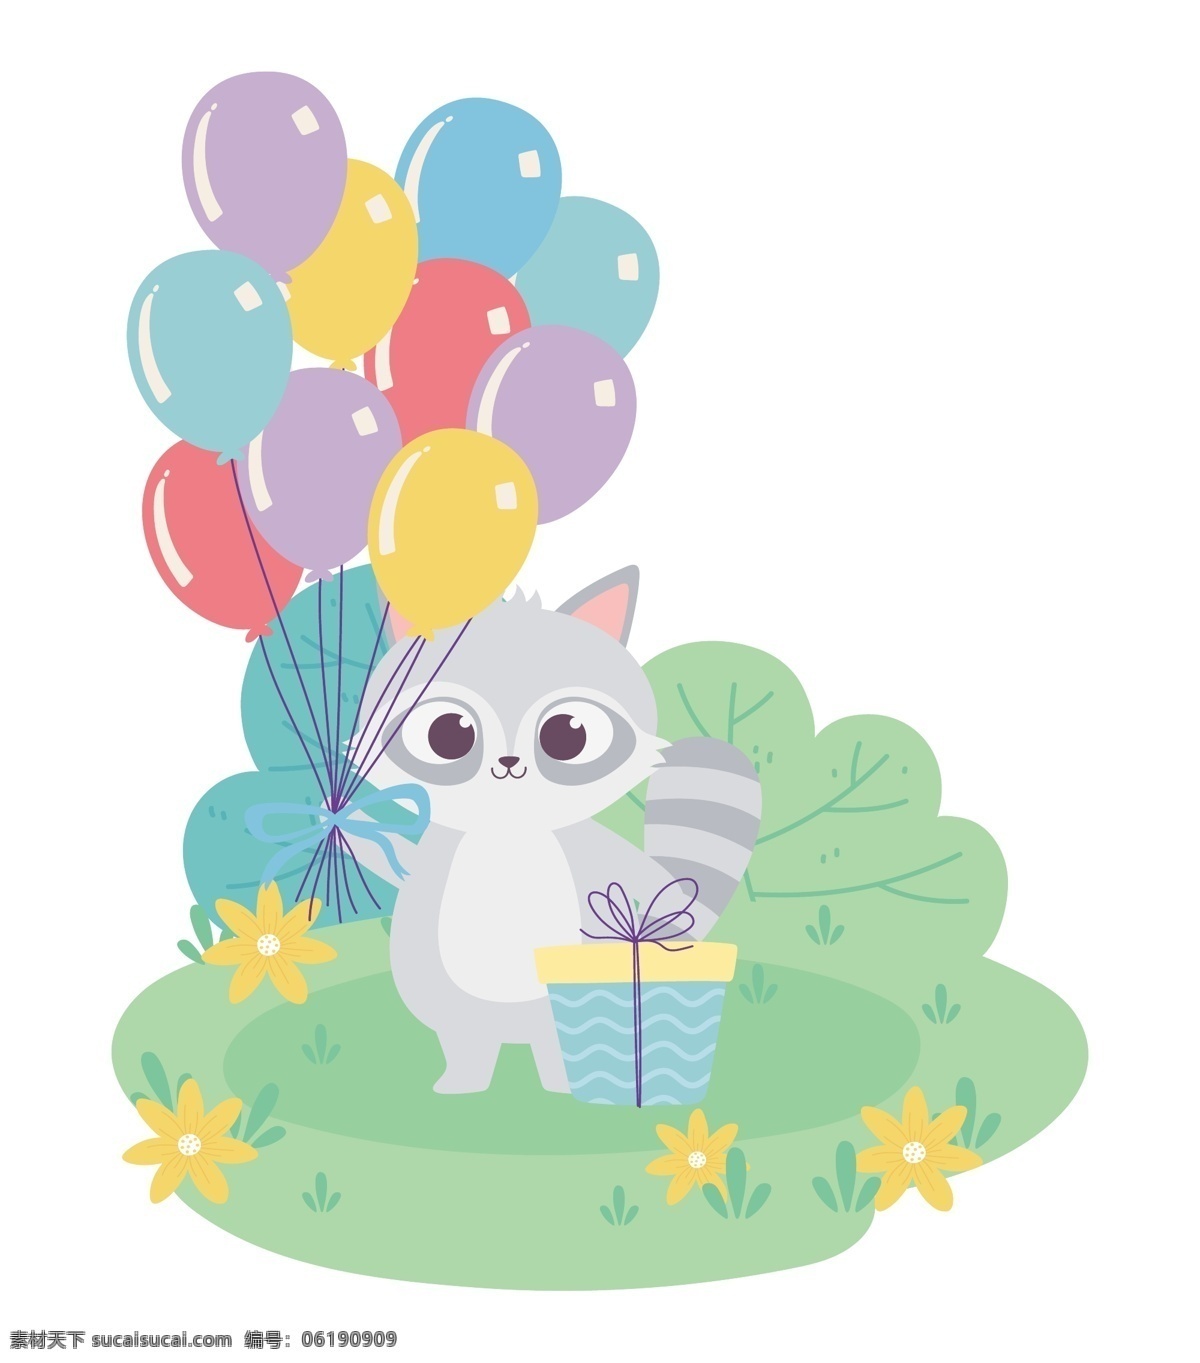 手绘 淡 彩 动物图片 手绘淡彩动物 卡通 动物 可爱 卡哇伊 卡片 封面 生日快乐 生日 礼盒 汽球 蛋糕 卡通设计